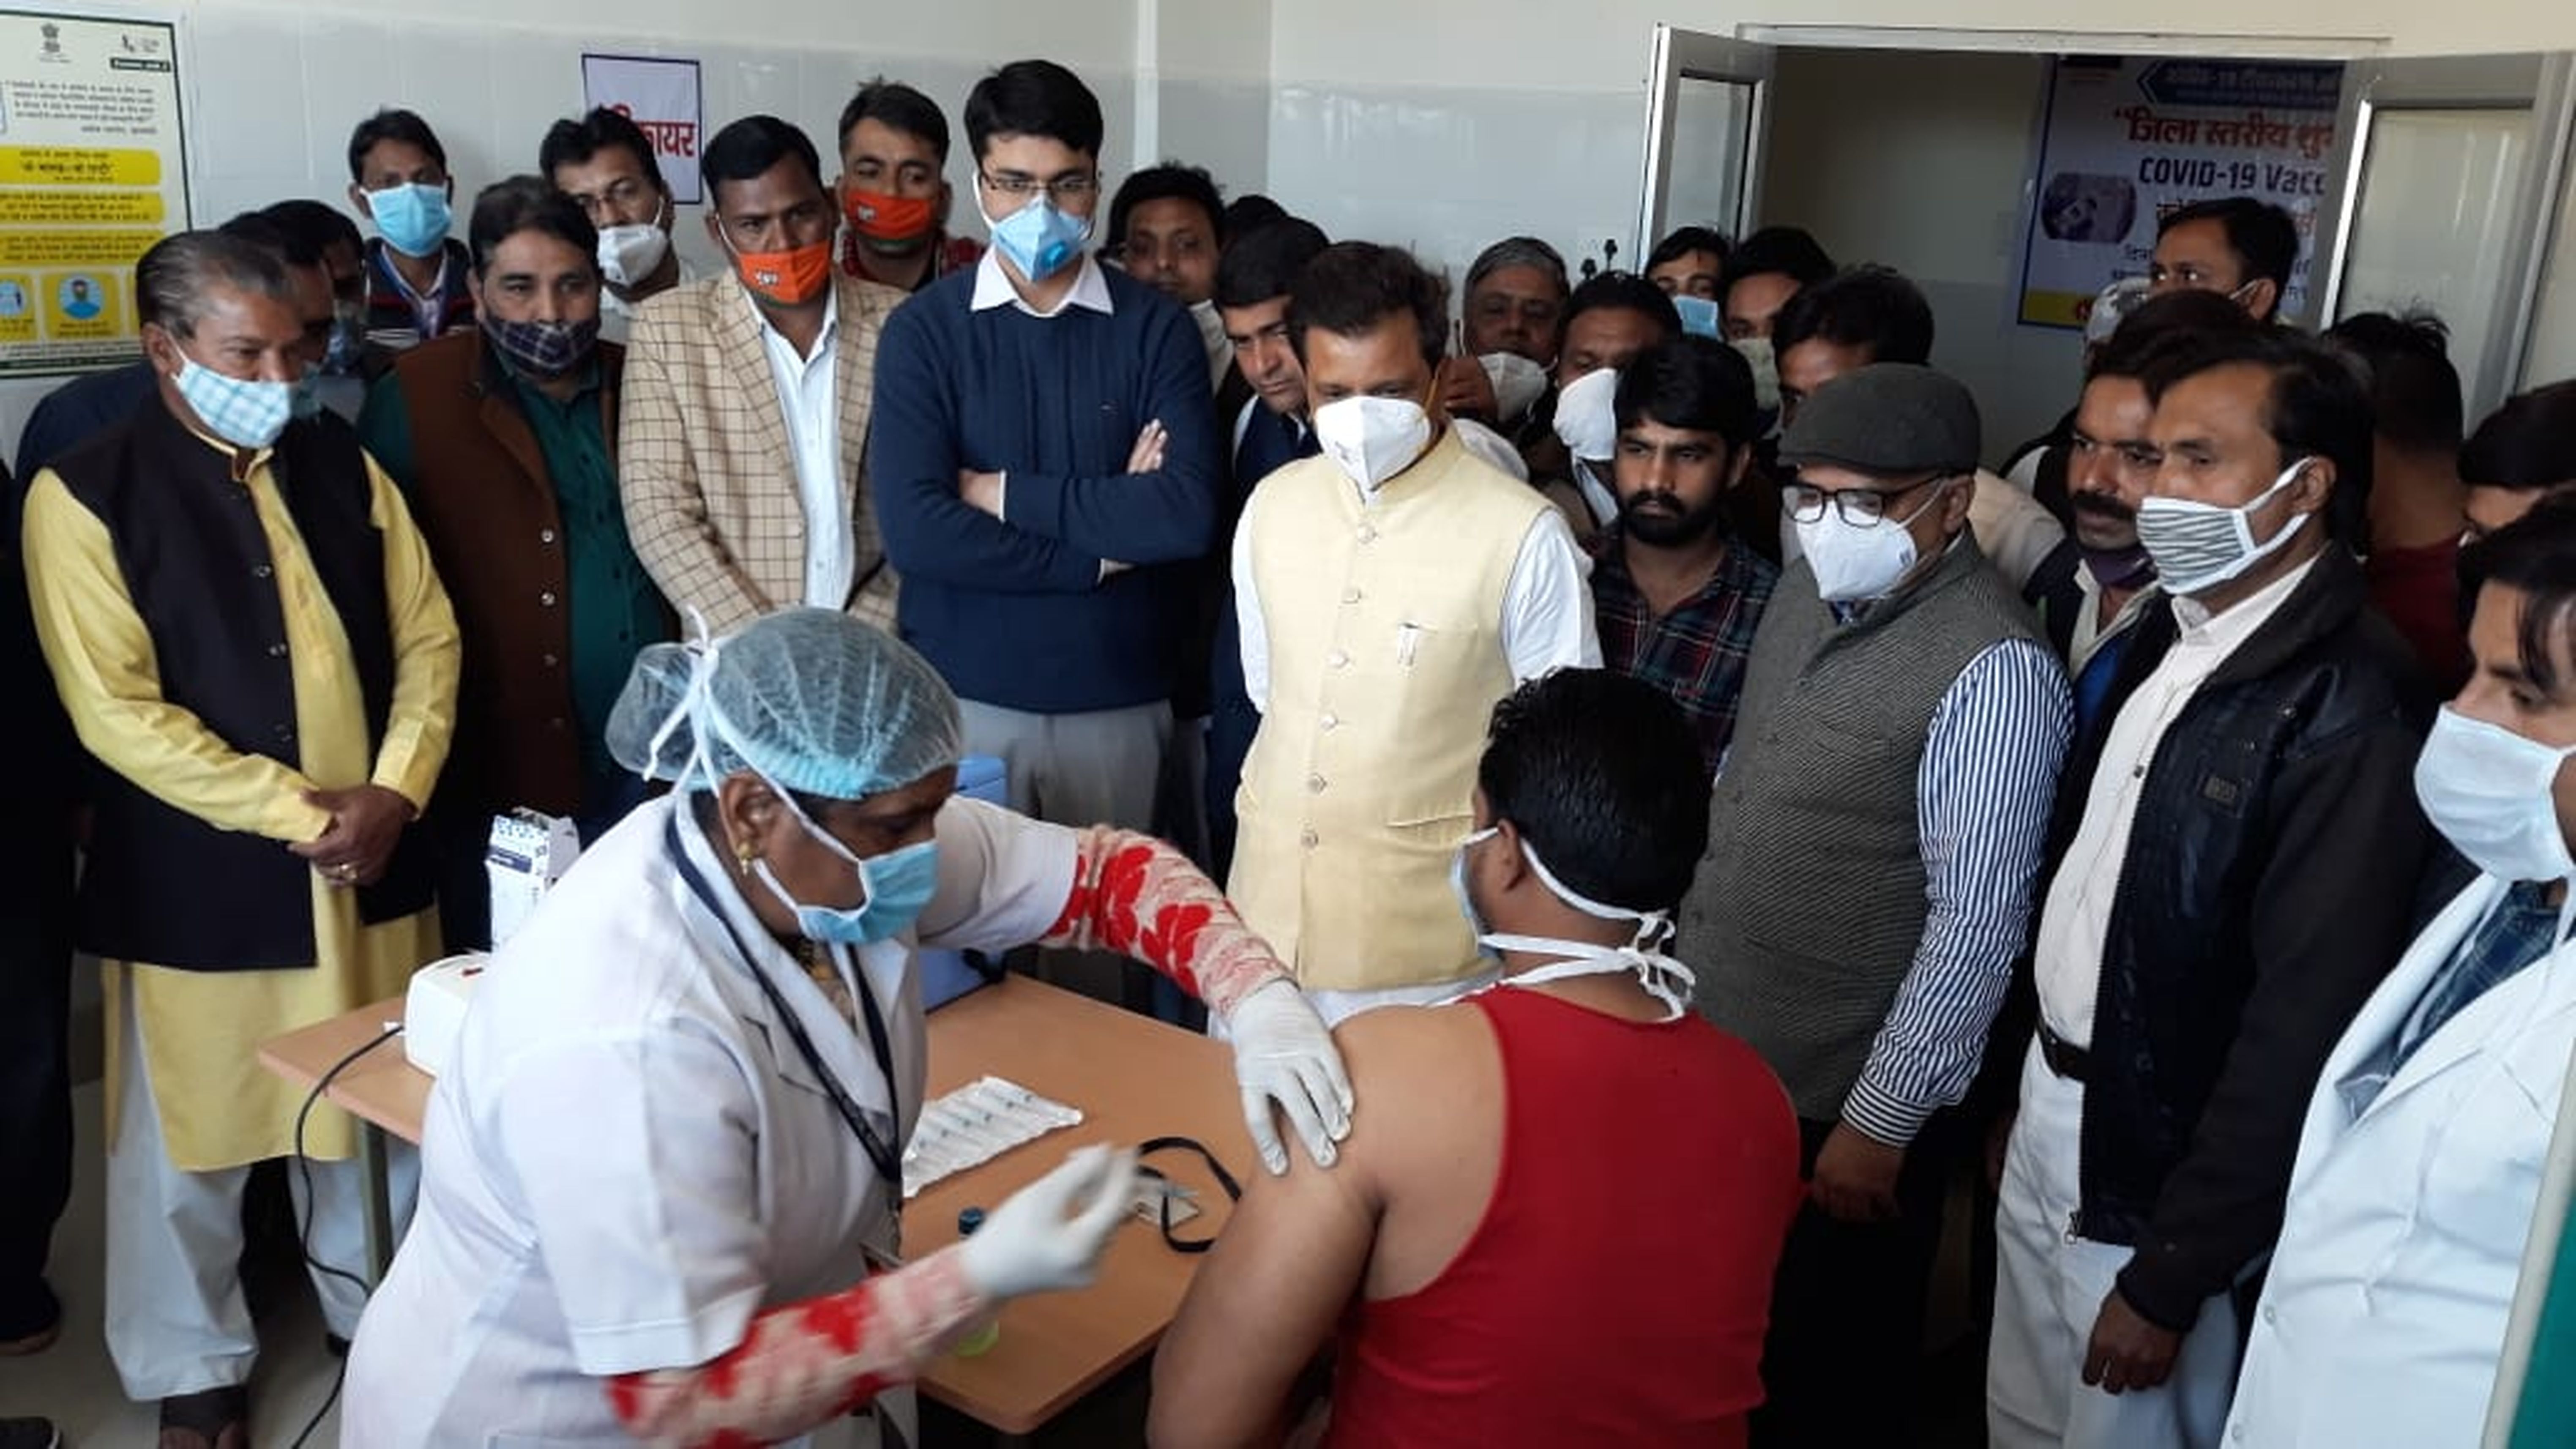 करौली जिले में चार केन्द्रों पर इतने स्वास्थ्यकर्मियों ने लगवाया टीका